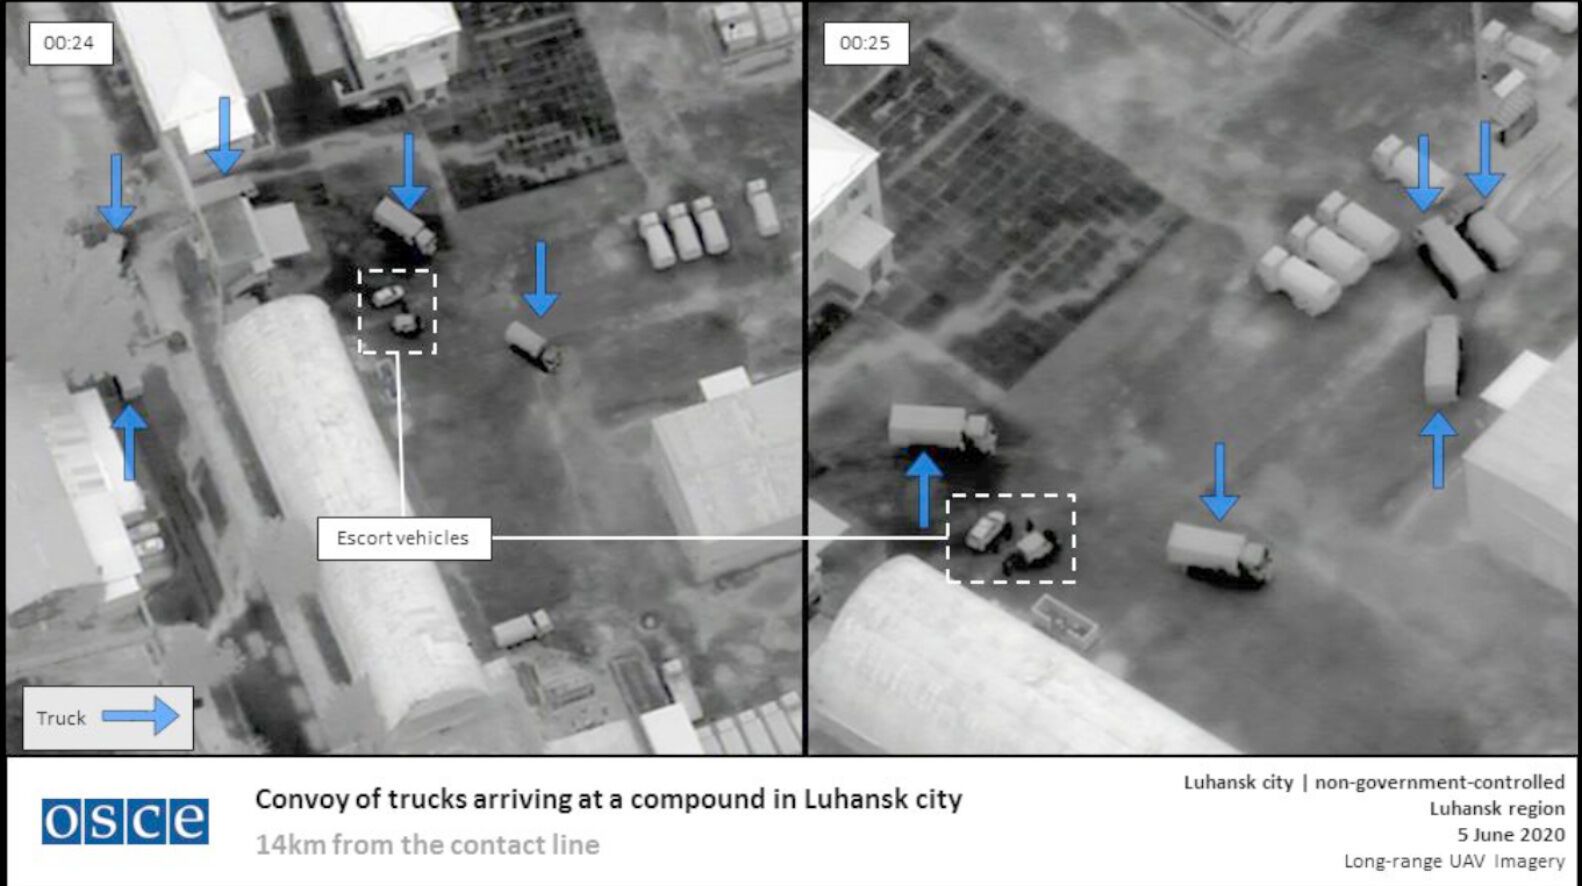 Снимки из БПЛА, подтверждающие переброс российской военной техники в Луганск